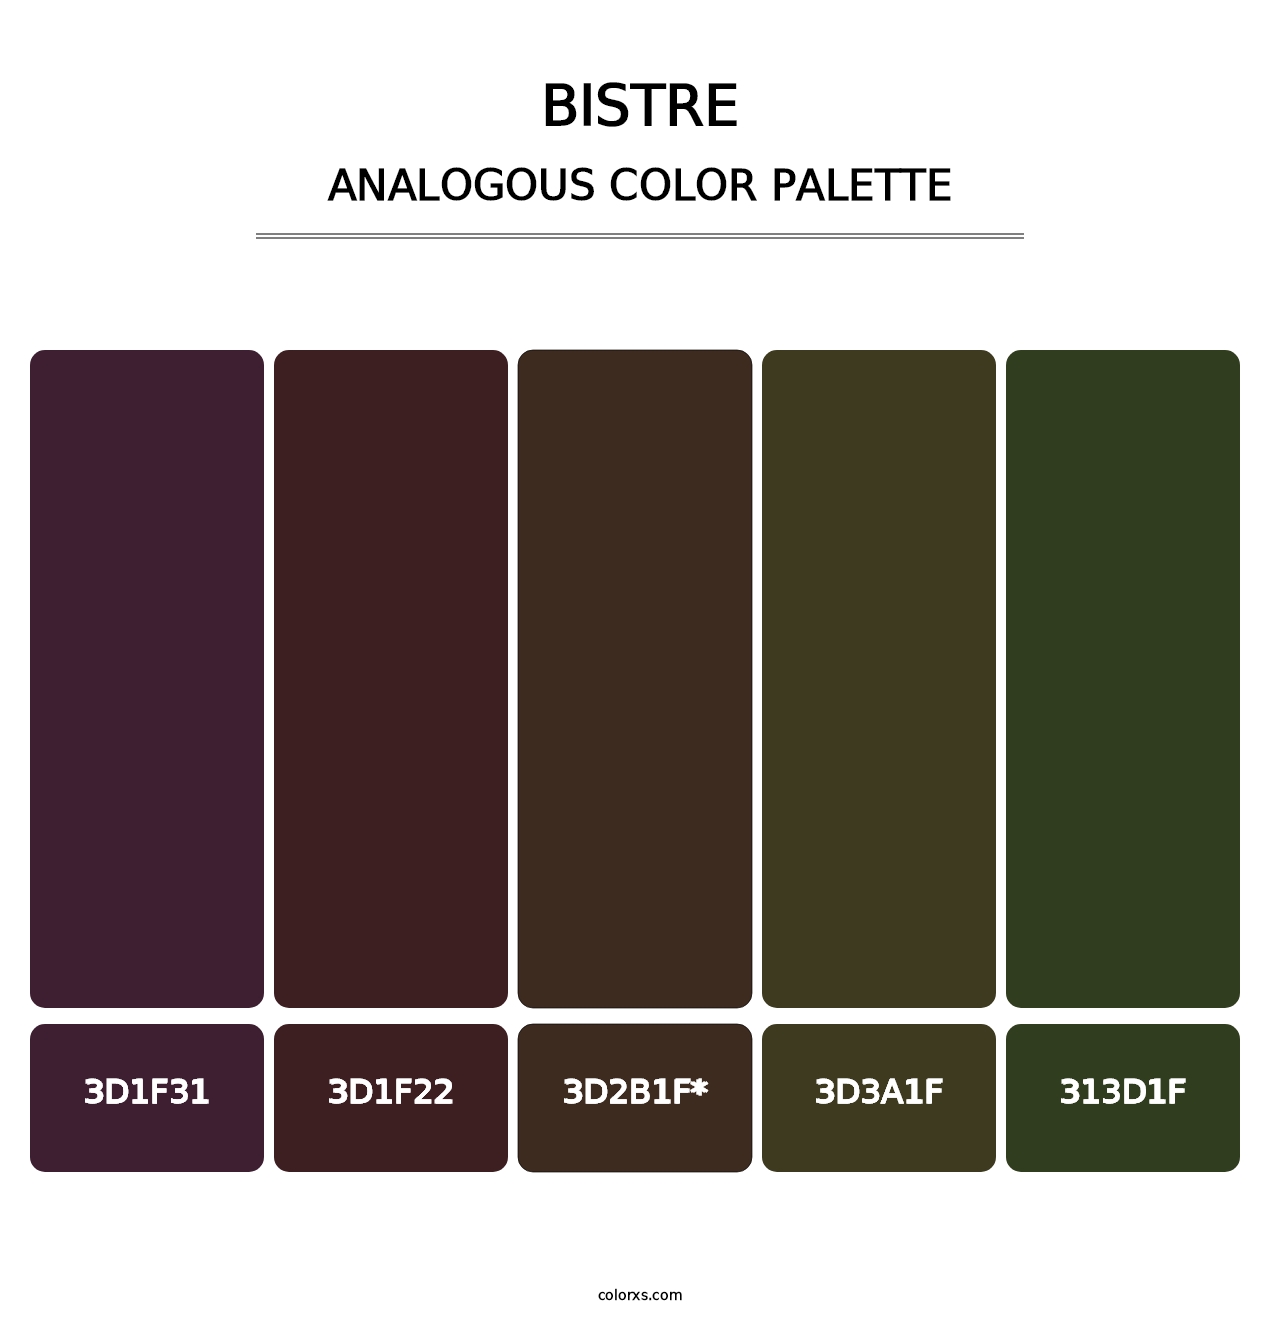 Bistre - Analogous Color Palette